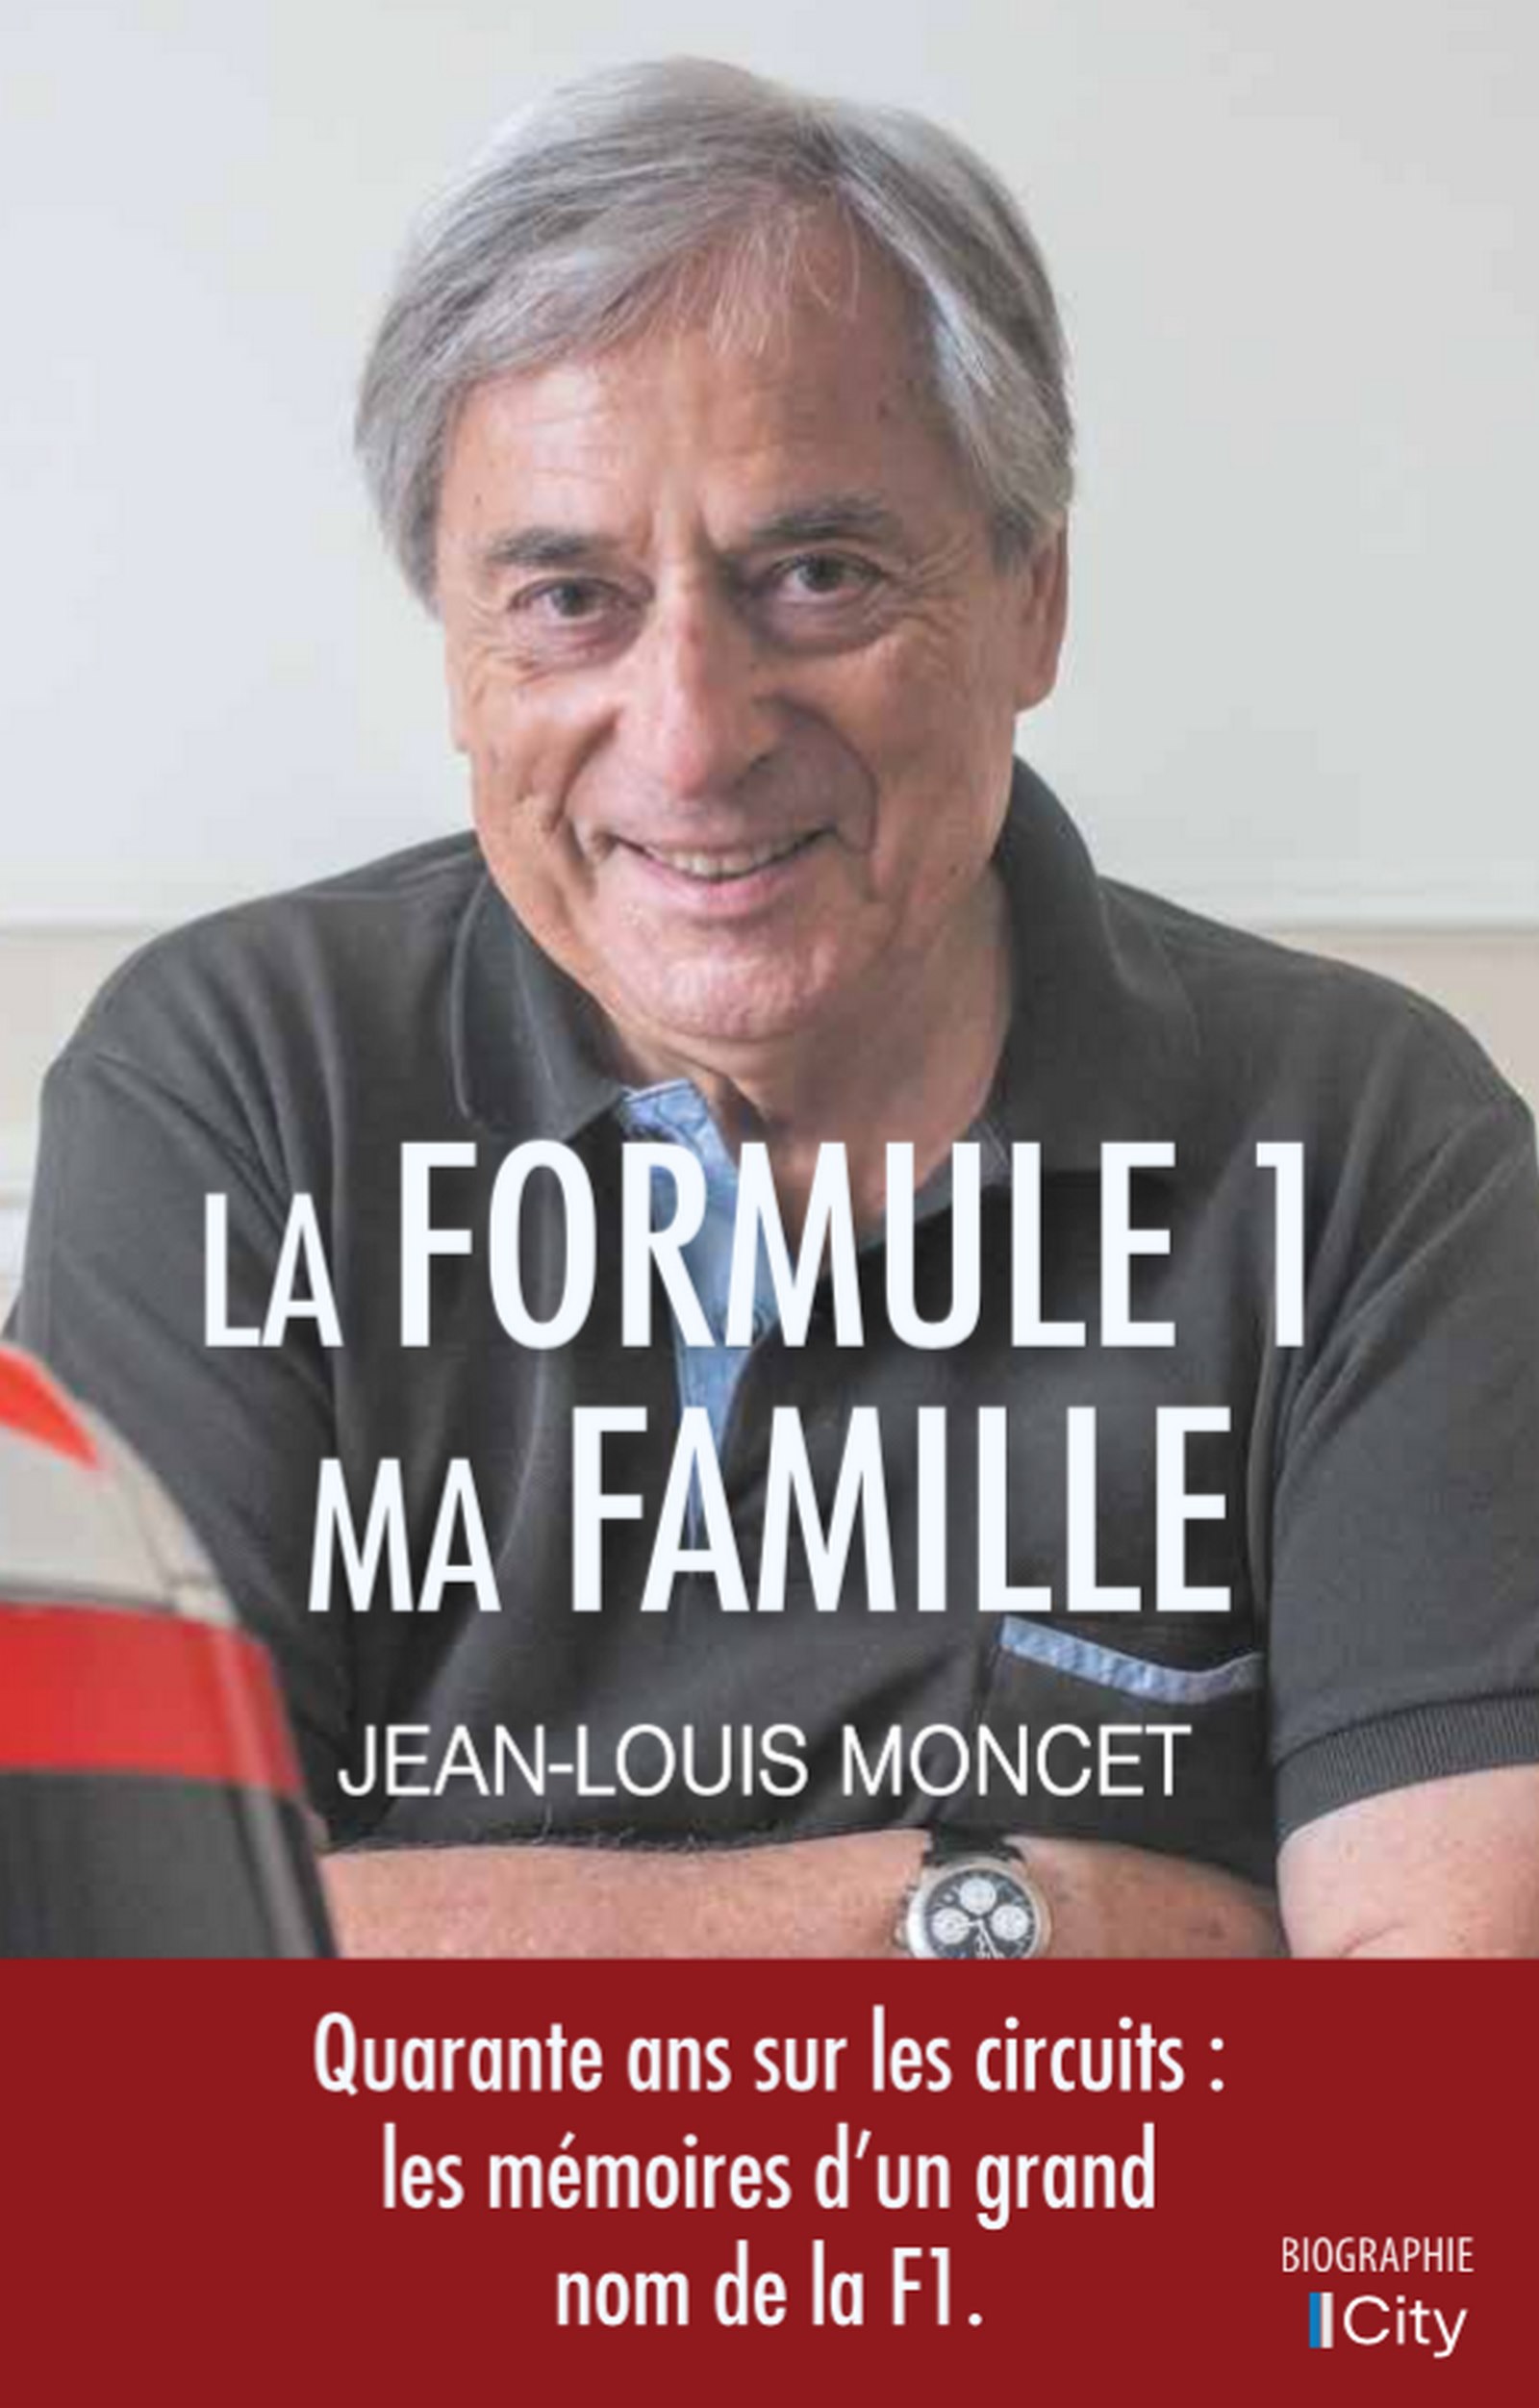 Couverture du livre de Jean-Louis Moncet